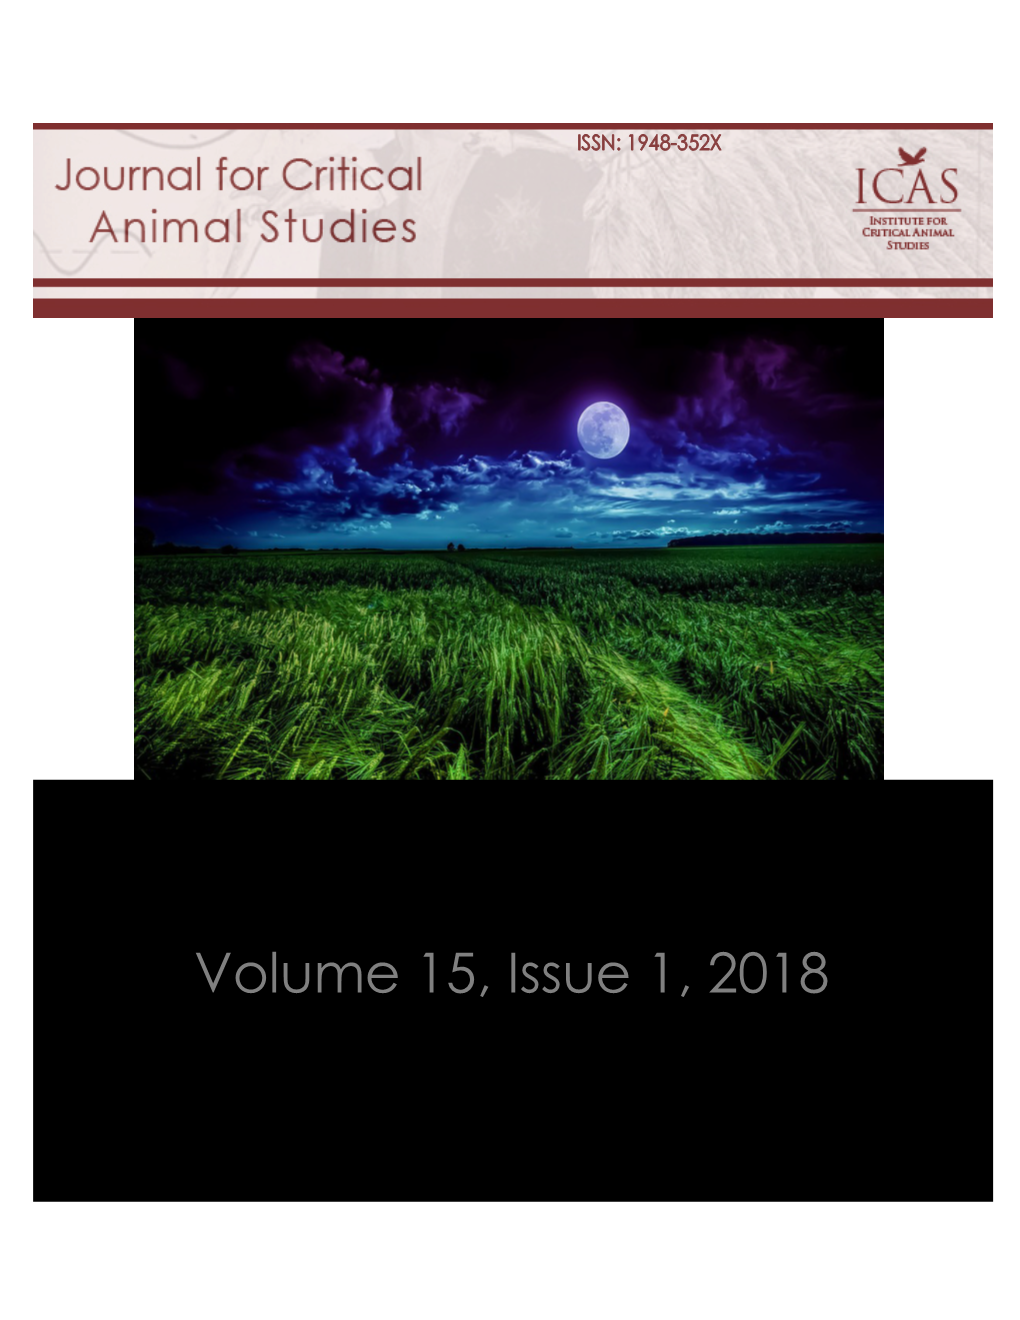 PDF – JCAS VOLUME 15, ISSUE 1, March 2018